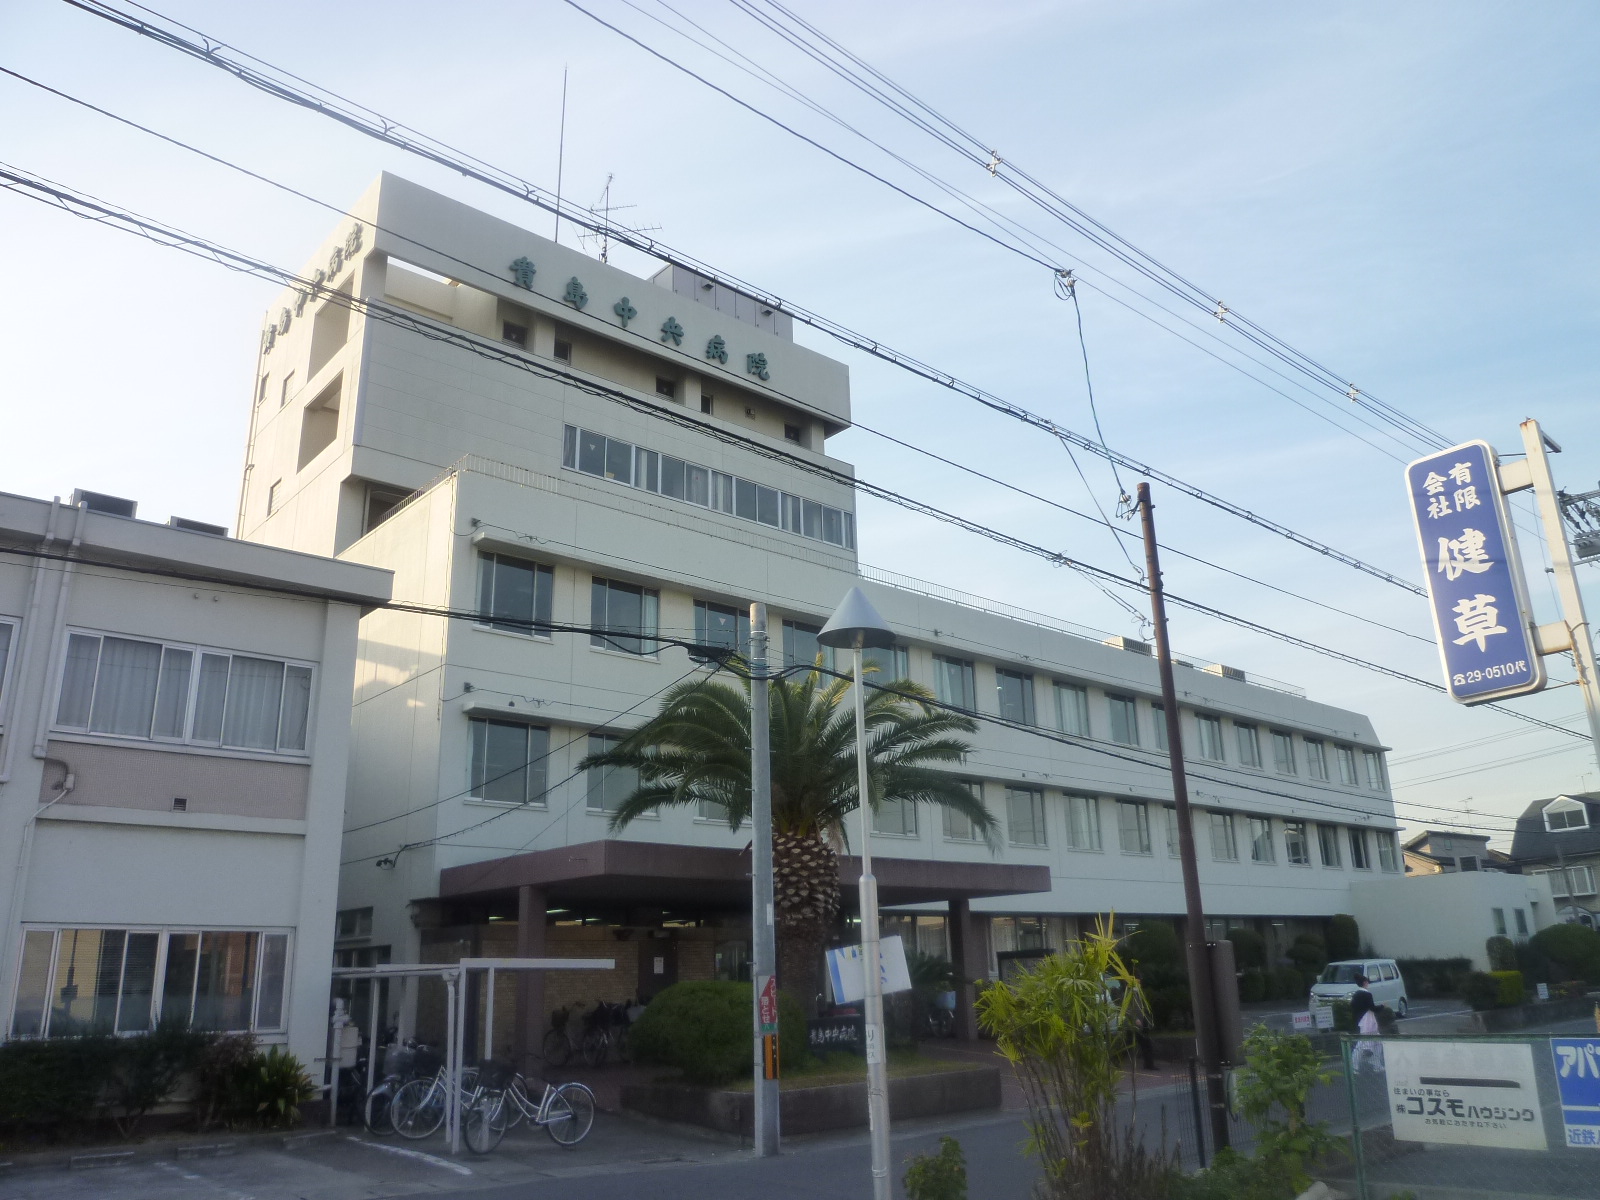 Hospital. 430m until the medical corporation Takashi Medical Association Kijima Central Hospital (Hospital)